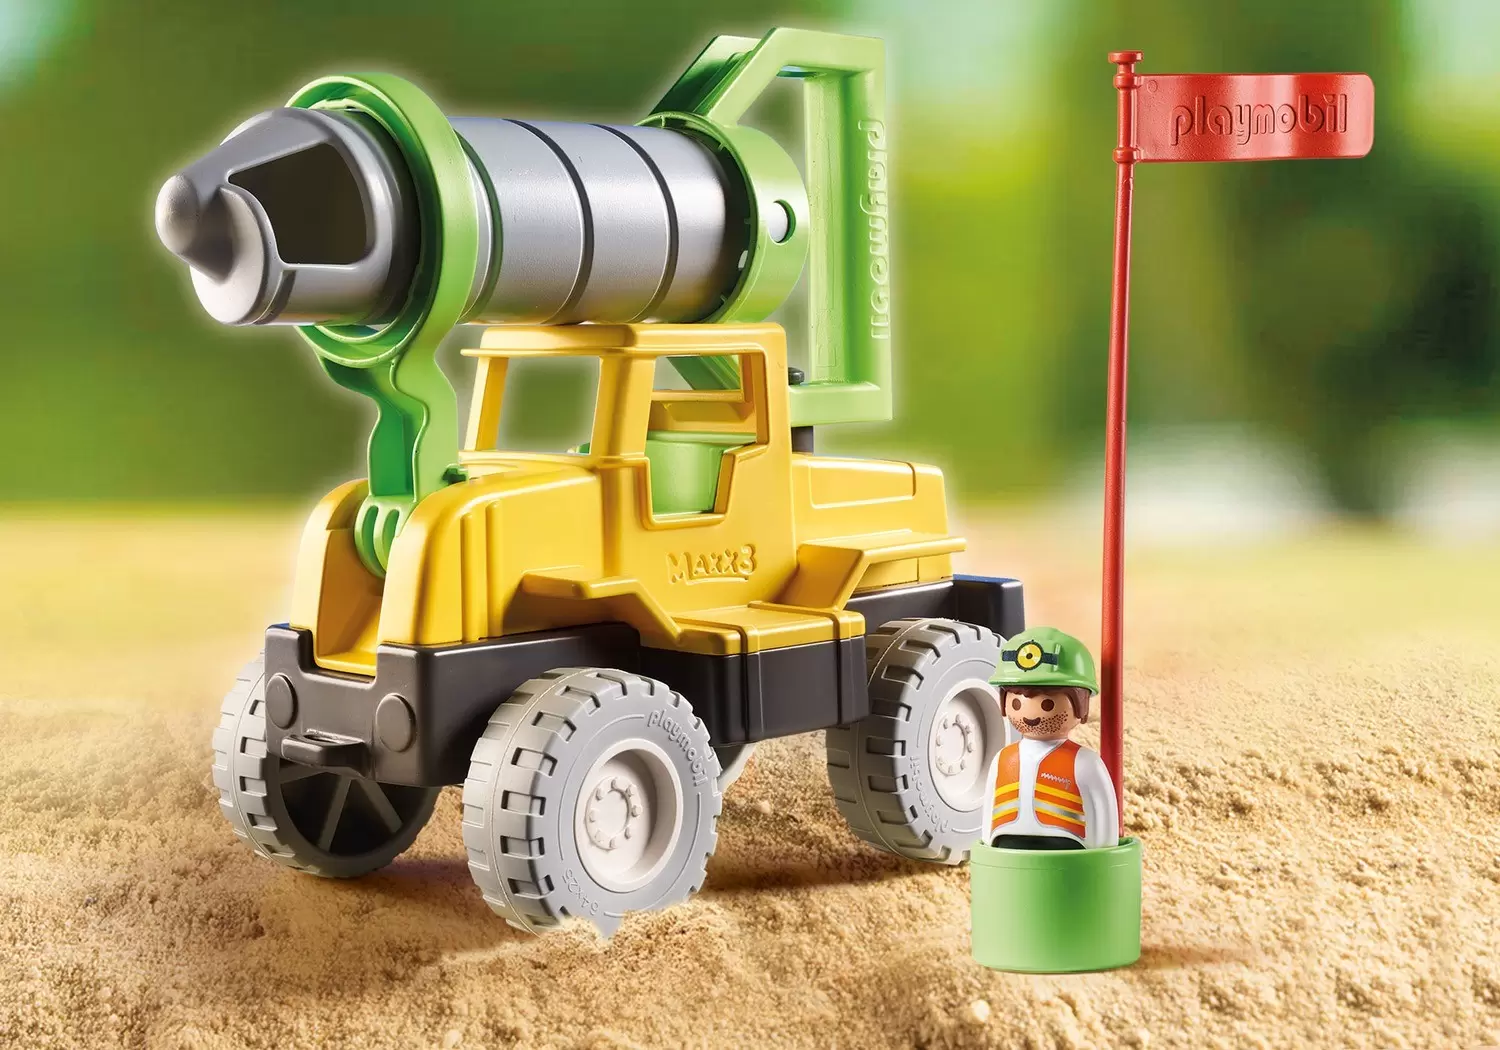 Playmobil Builders - Drilling truck